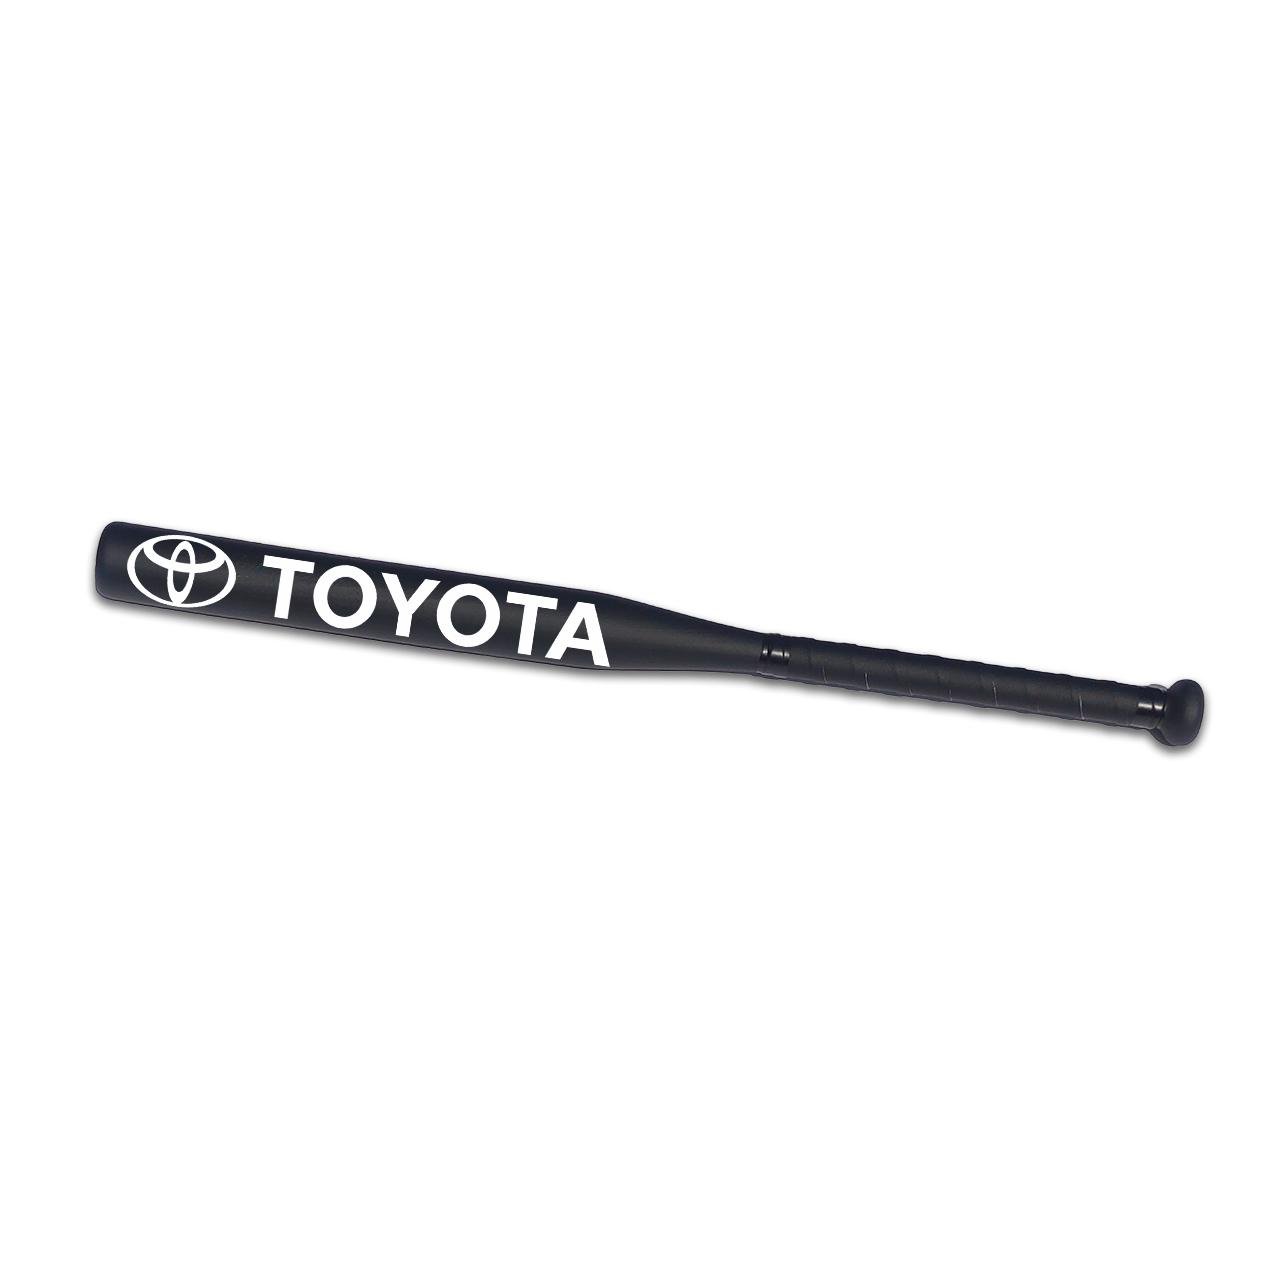 Біта бейсбольна Avtobita Toyota з чохлом Чорний (BB-Toy-00156)